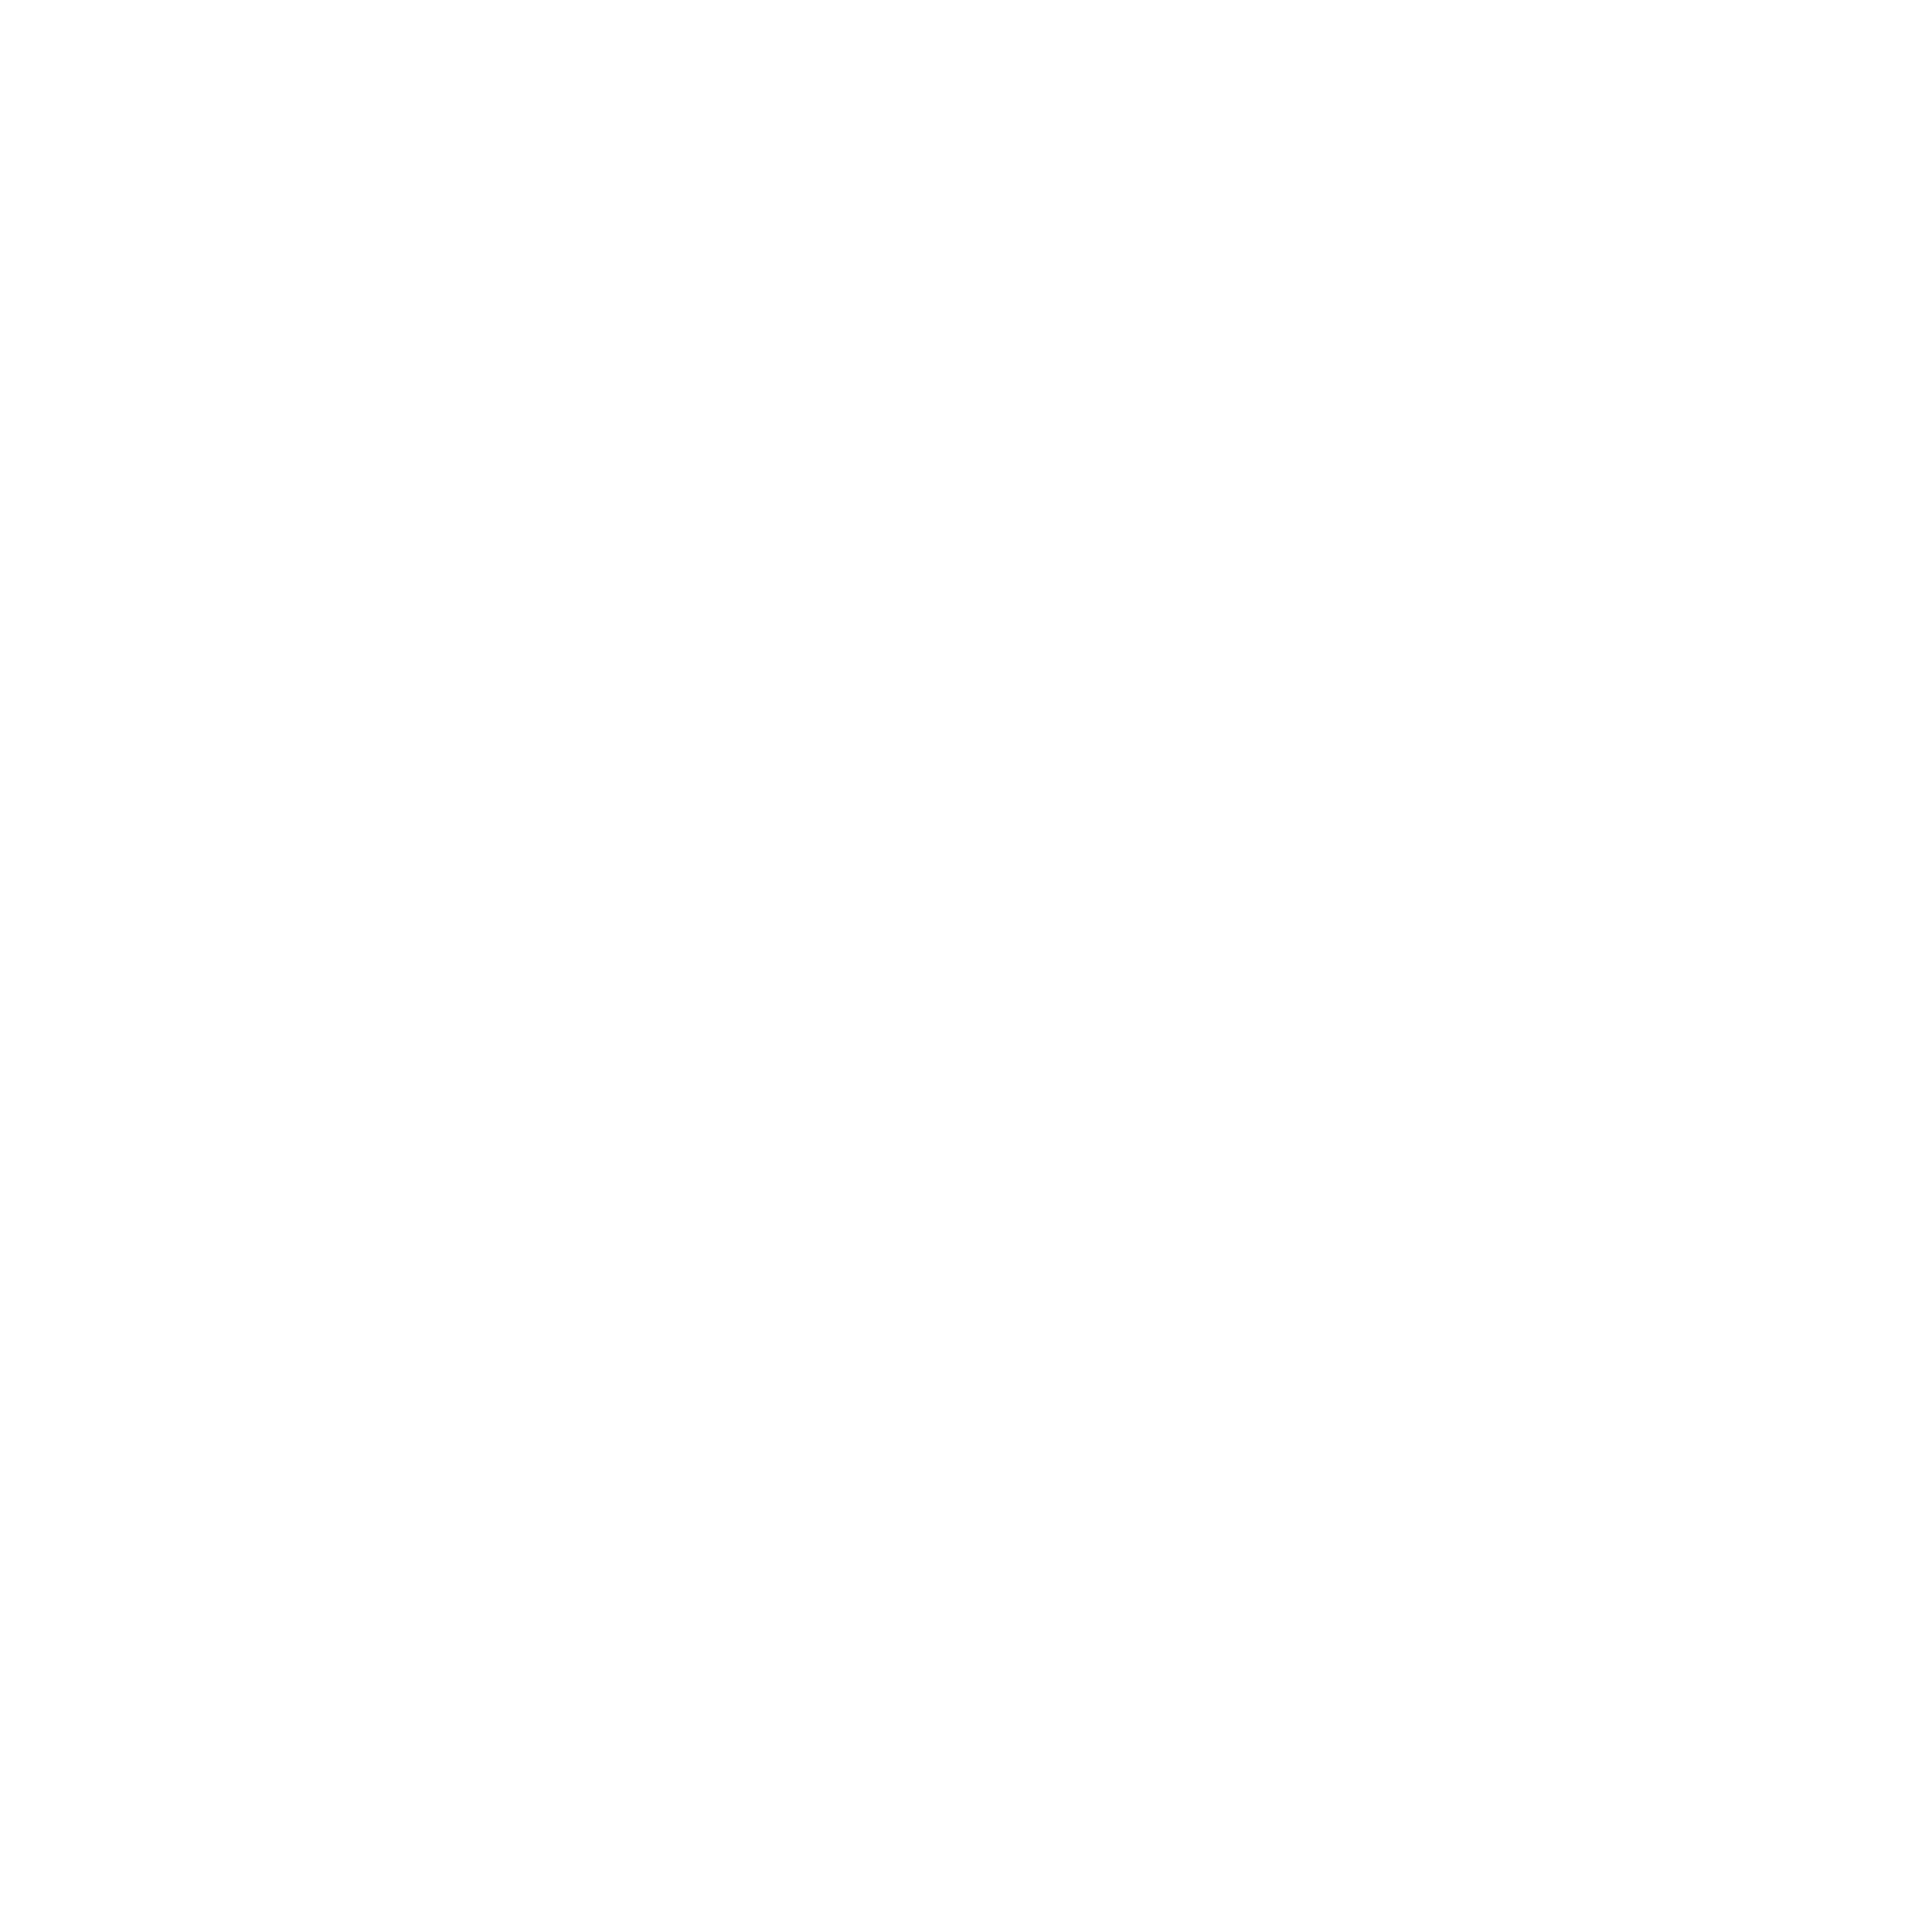 Korsé Cafébar